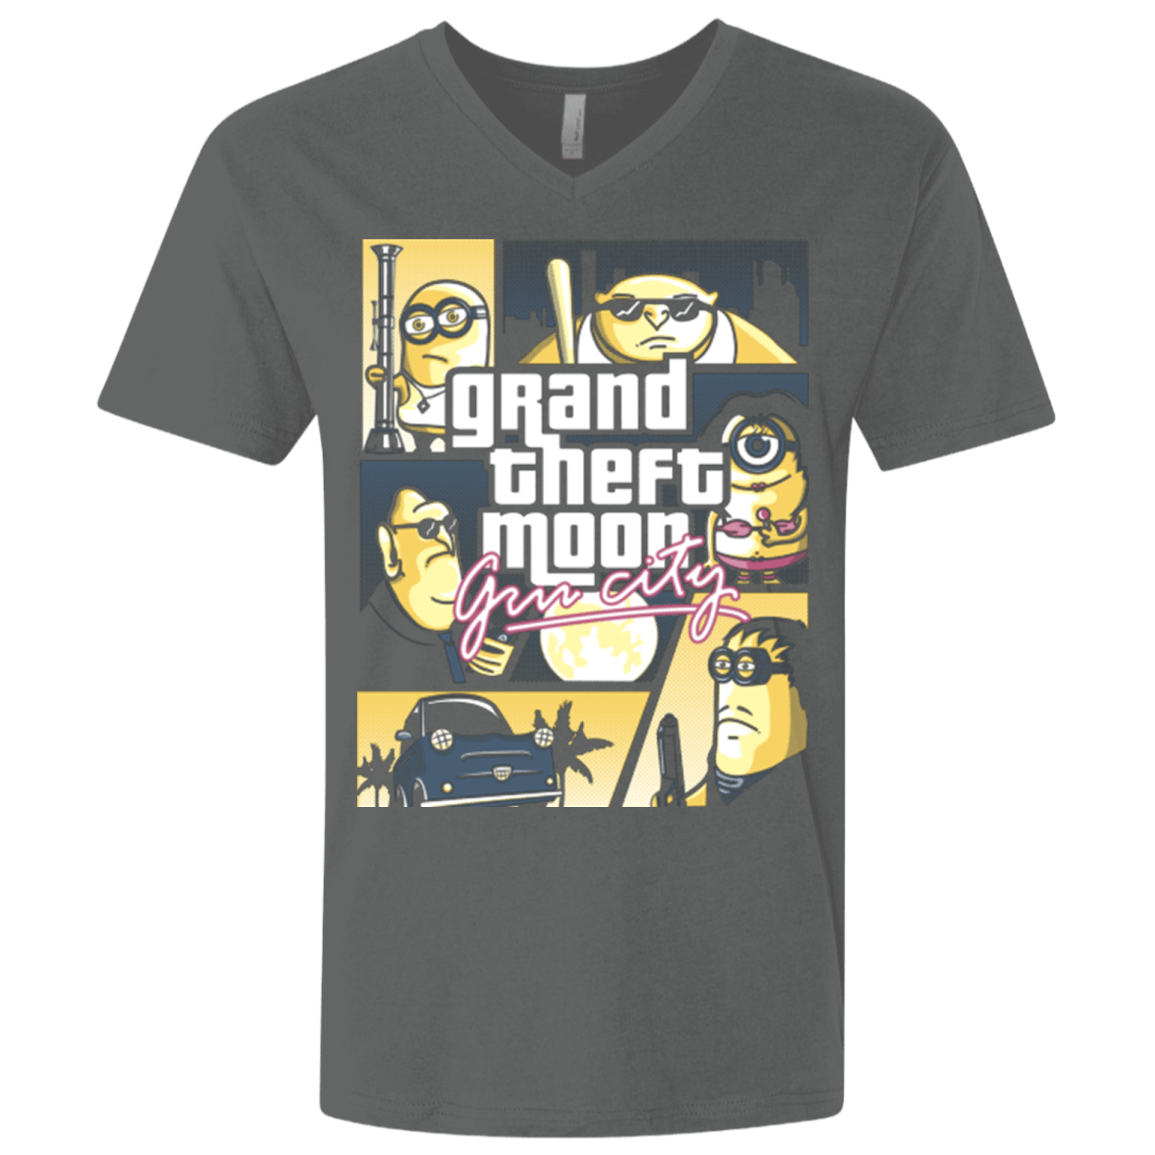 Grand theft moon Men's Premium V-Neck